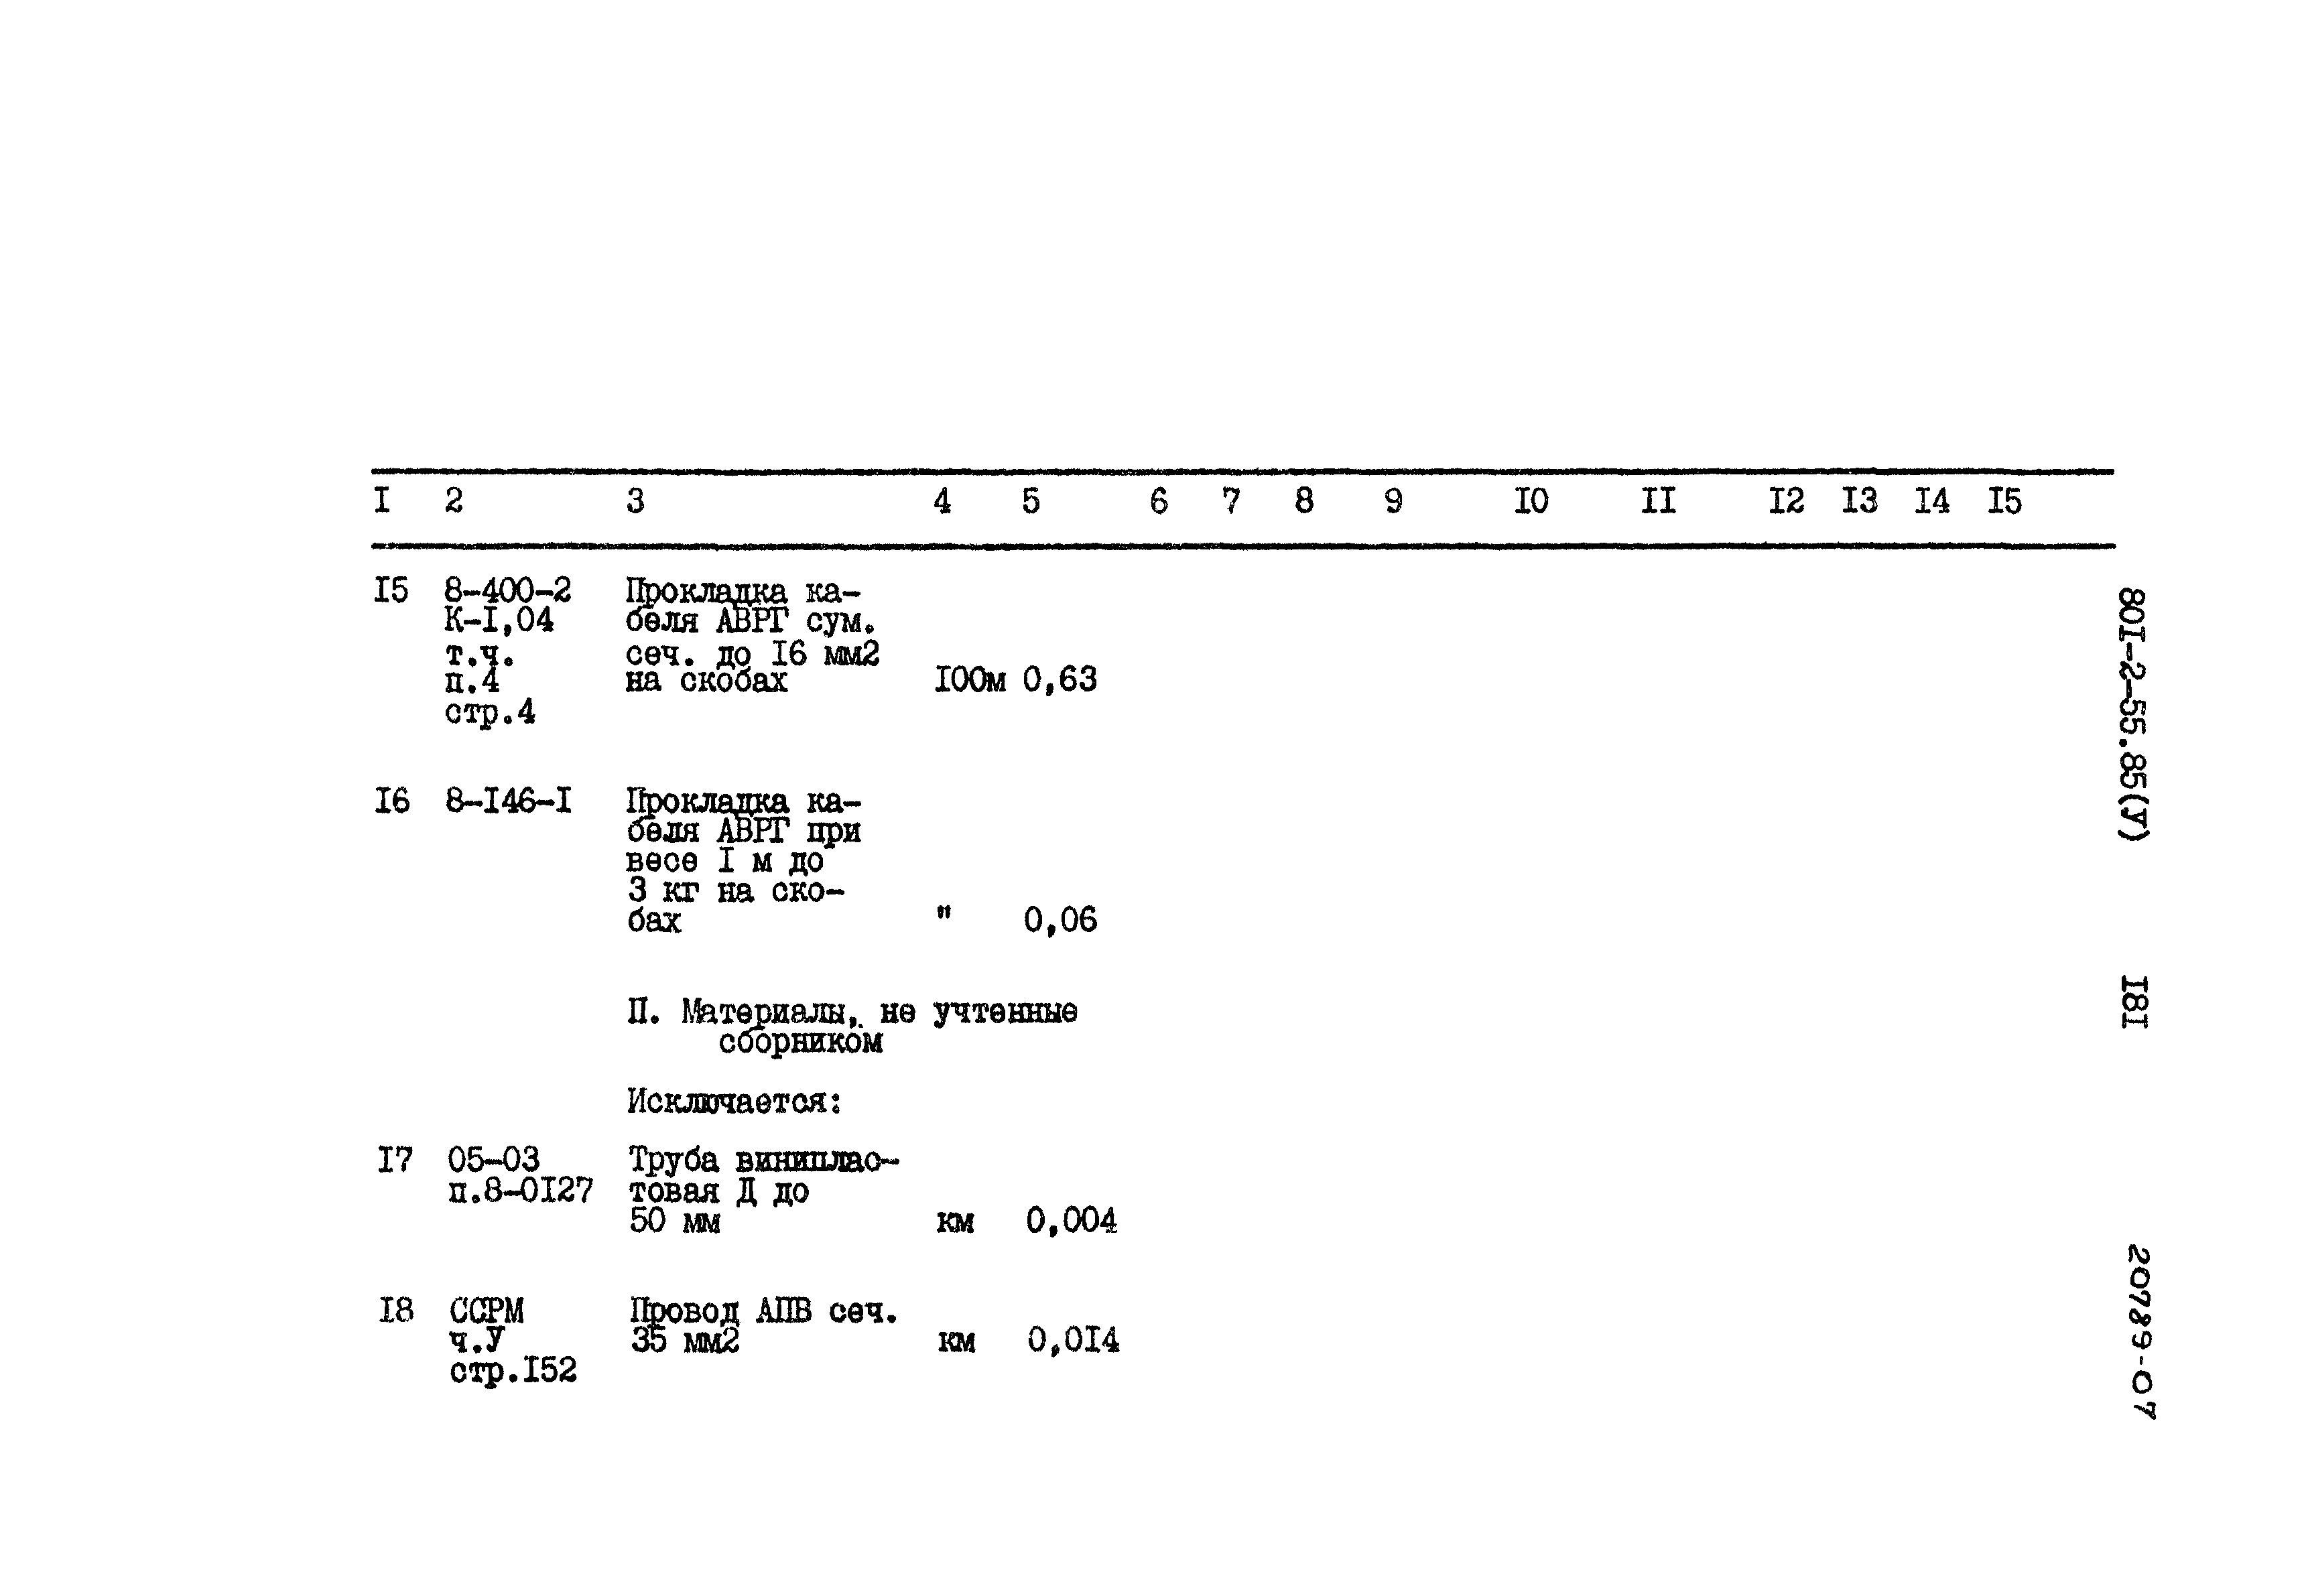 Типовой проект 801-2-55.85